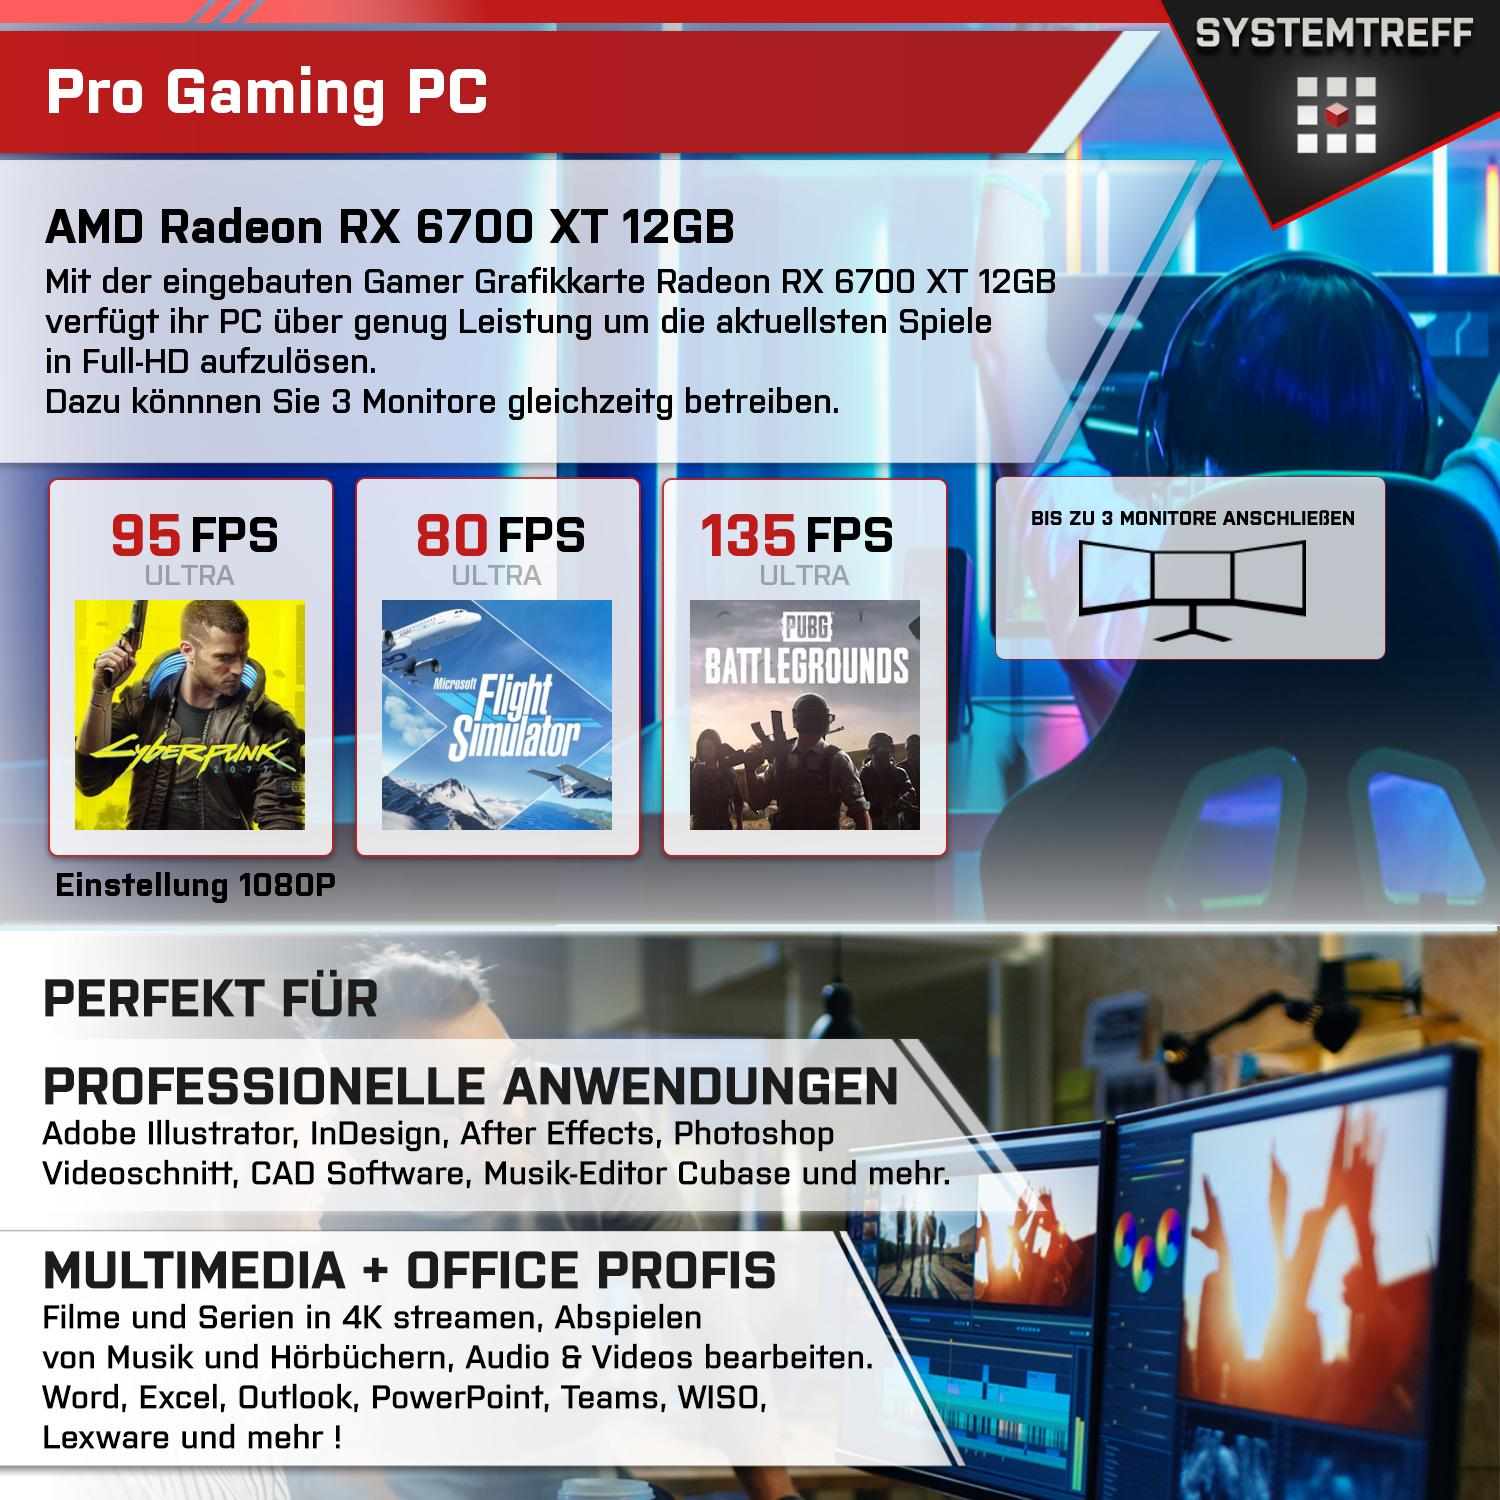 SYSTEMTREFF Gaming Komplett AMD Ryzen AMD GB 1000 GB 12GB XT mSSD, 5800X, GDDR6, PC 5800X Radeon Prozessor, RAM, 6700 Komplett 12 GB RX 32 mit 7